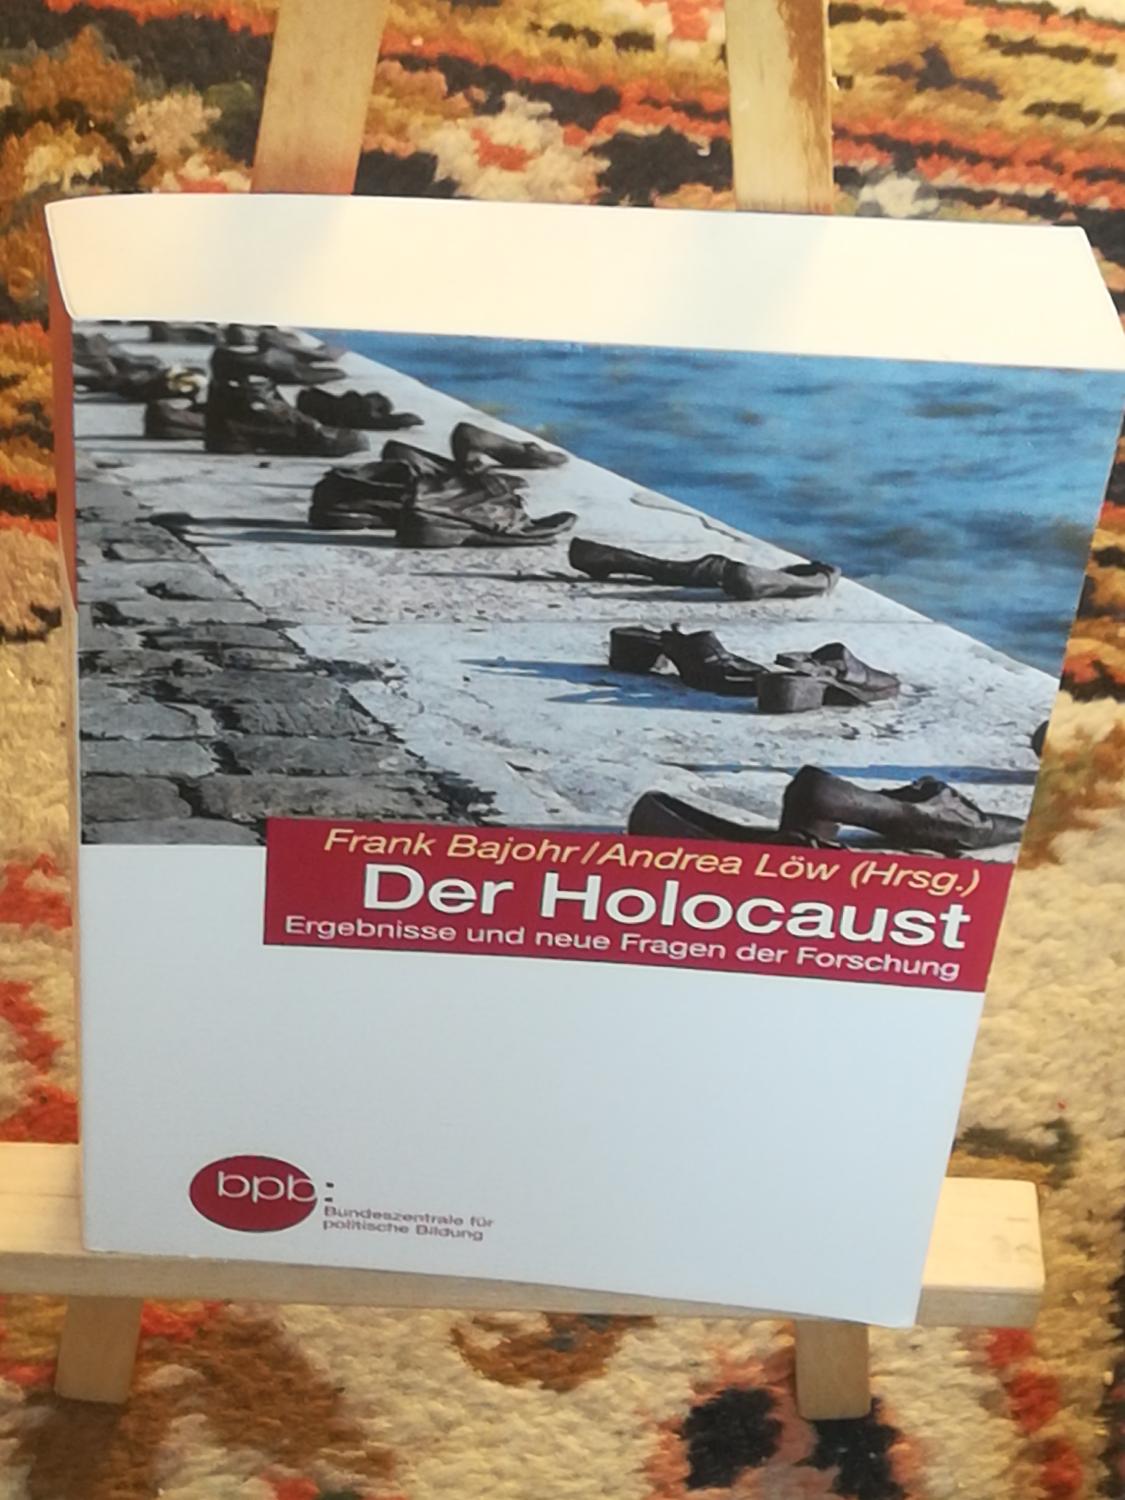 Der Holocaust, Ergebnisse und neue Fragen der Forschung - Bajohr Frank, Löw Andrea HRSG